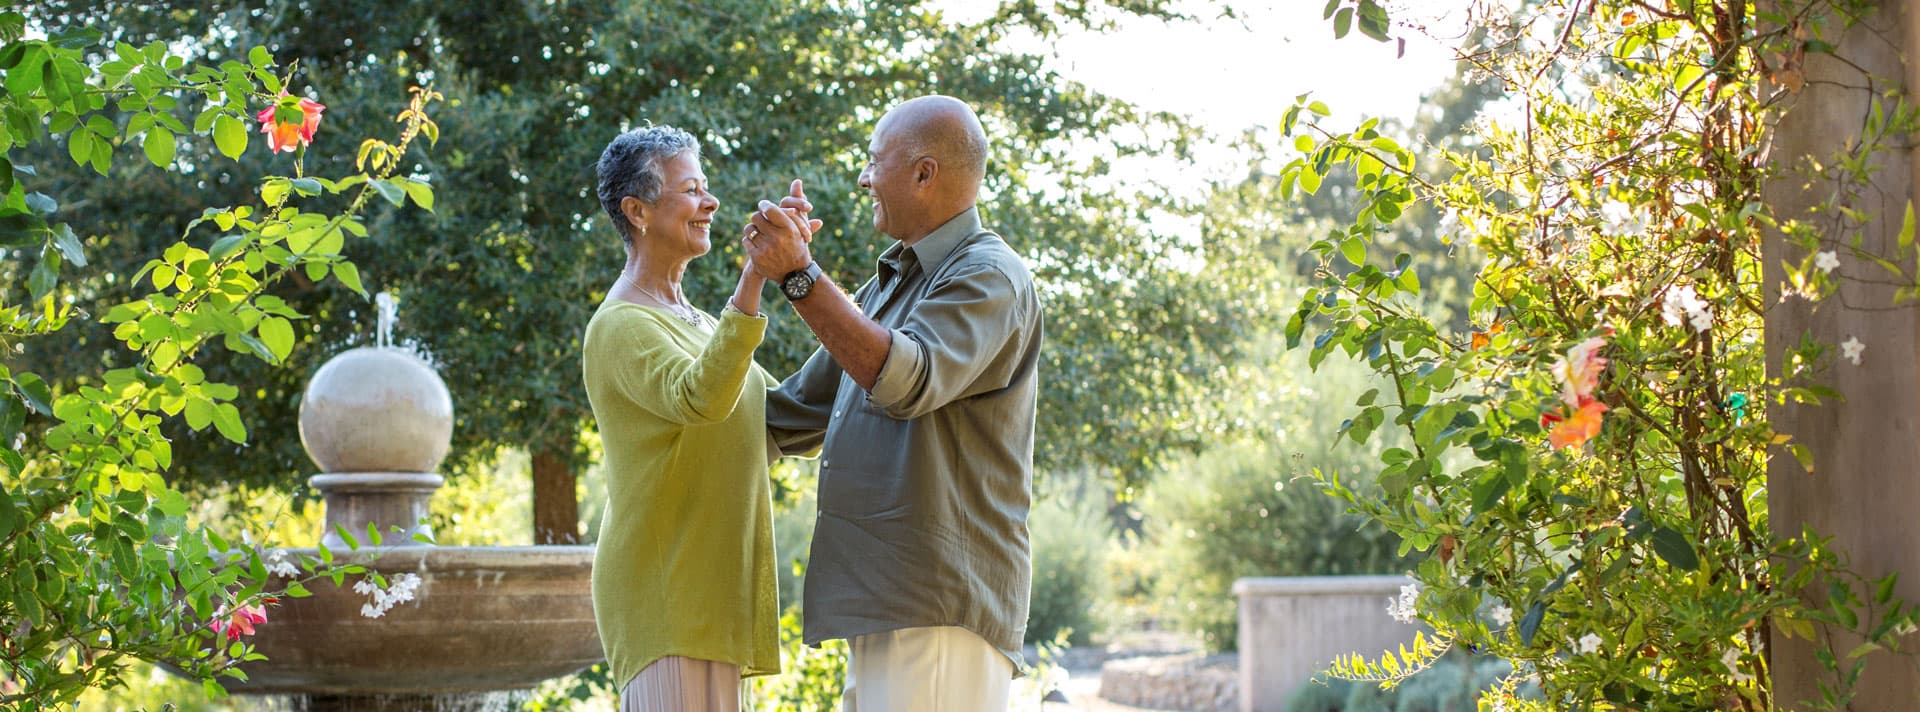 Senior couple dancing in a garden